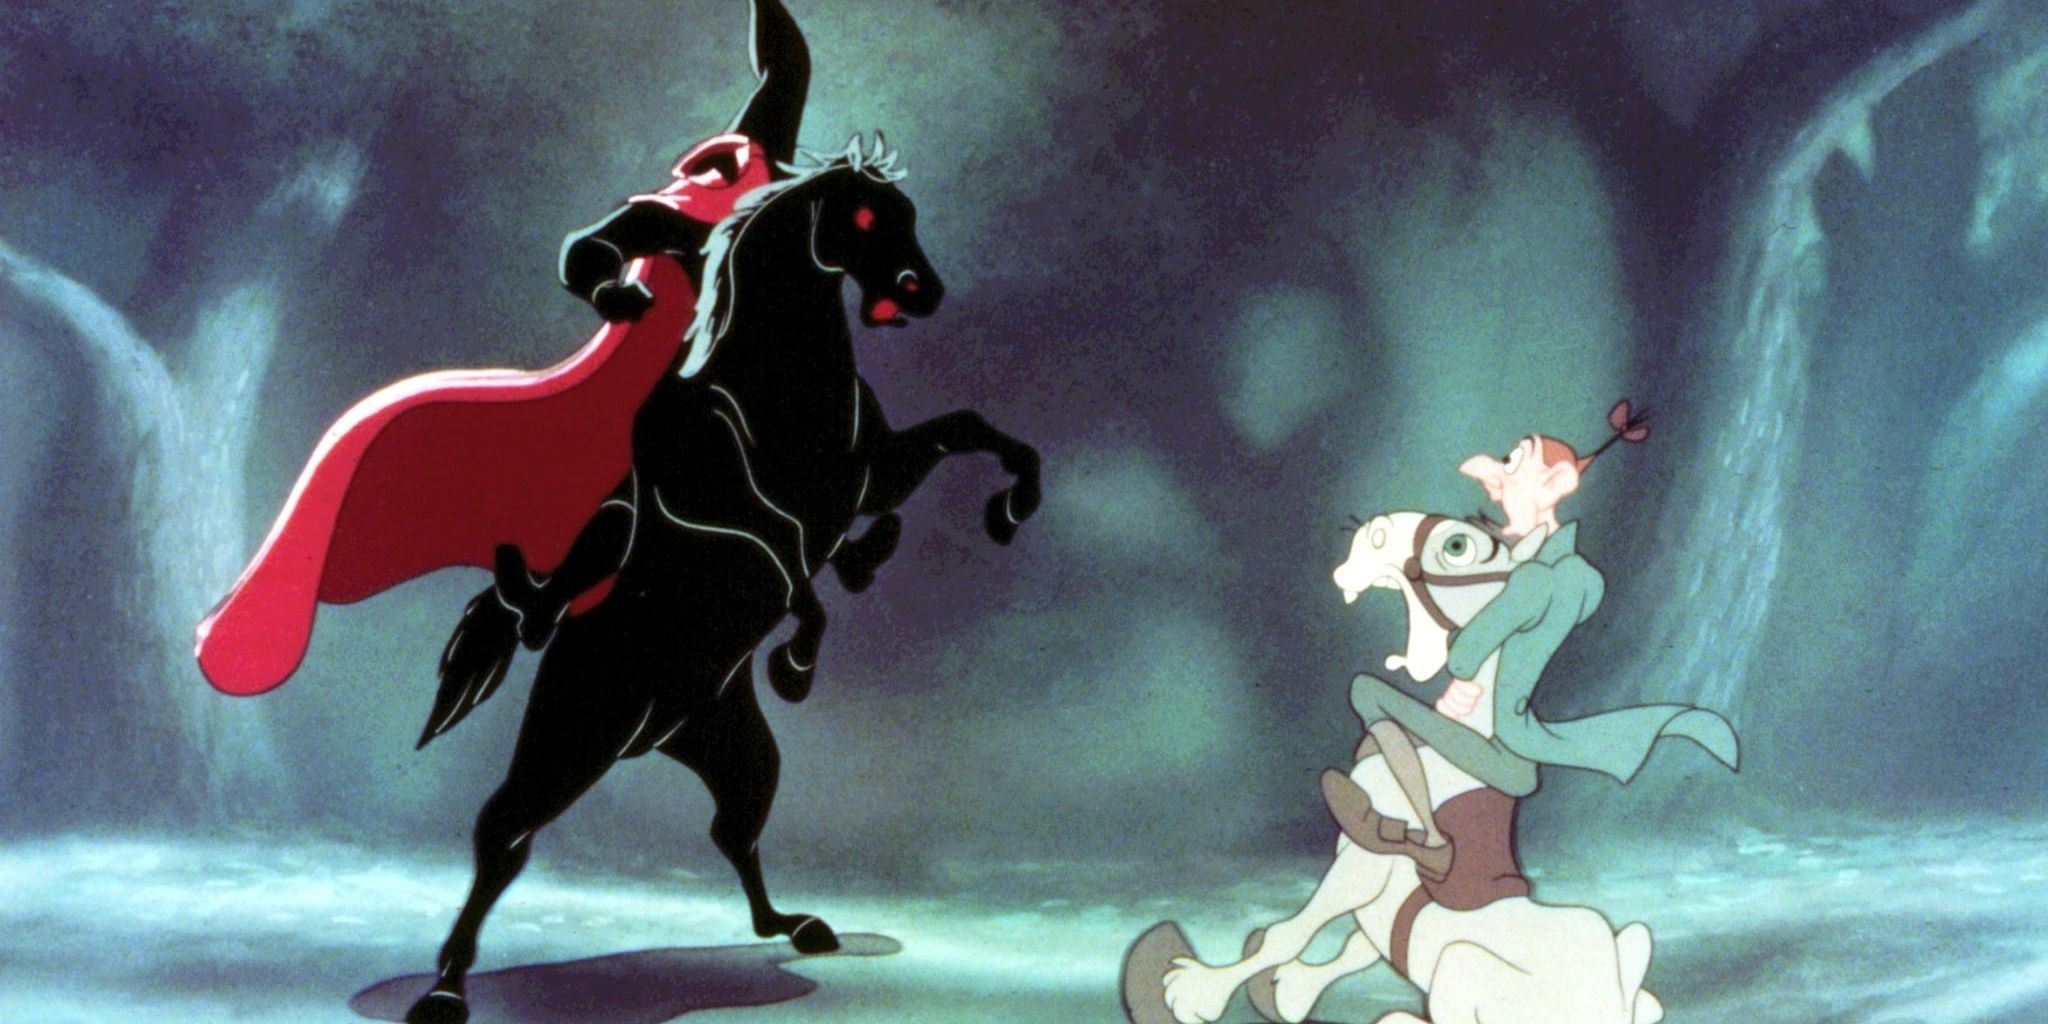 O Cavaleiro Sem Cabeça assusta um homem em um cavalo branco